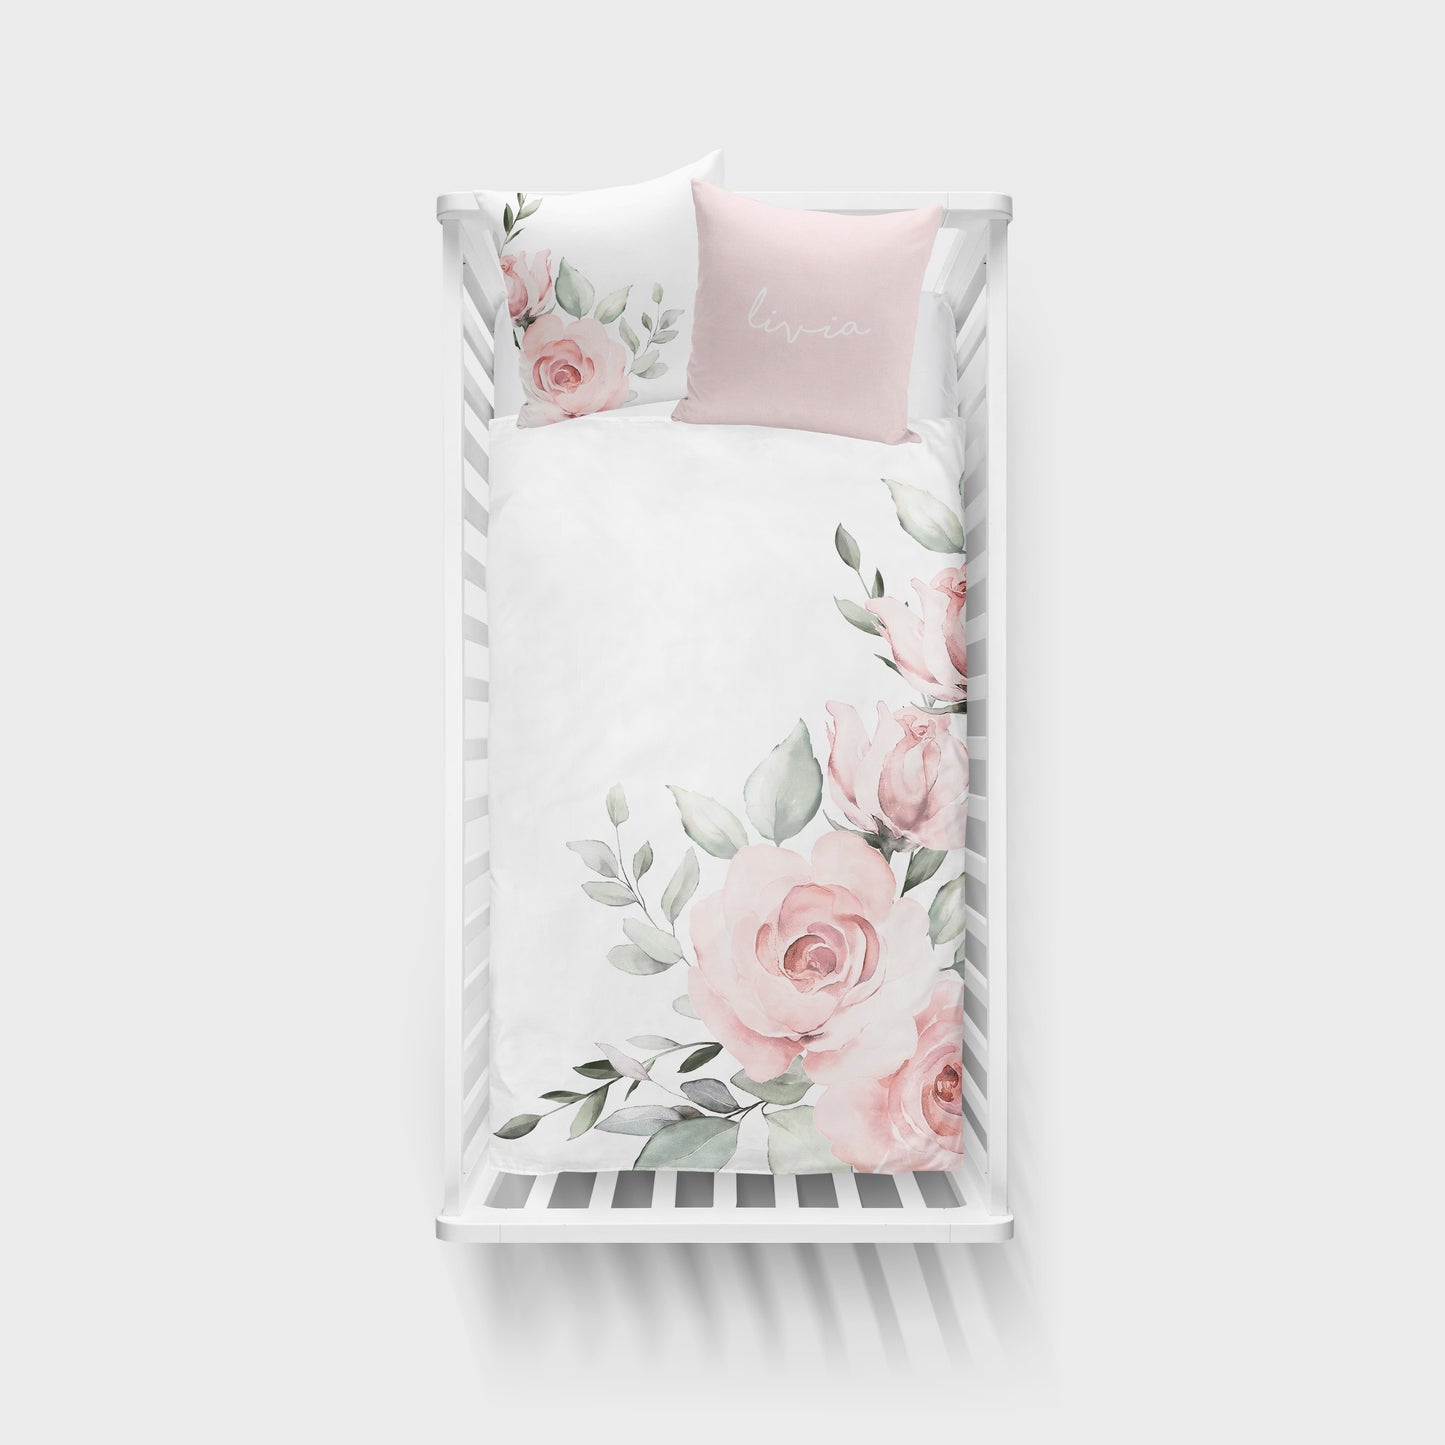 Ensemble de literie complet pour bassinette | Roses Géantes